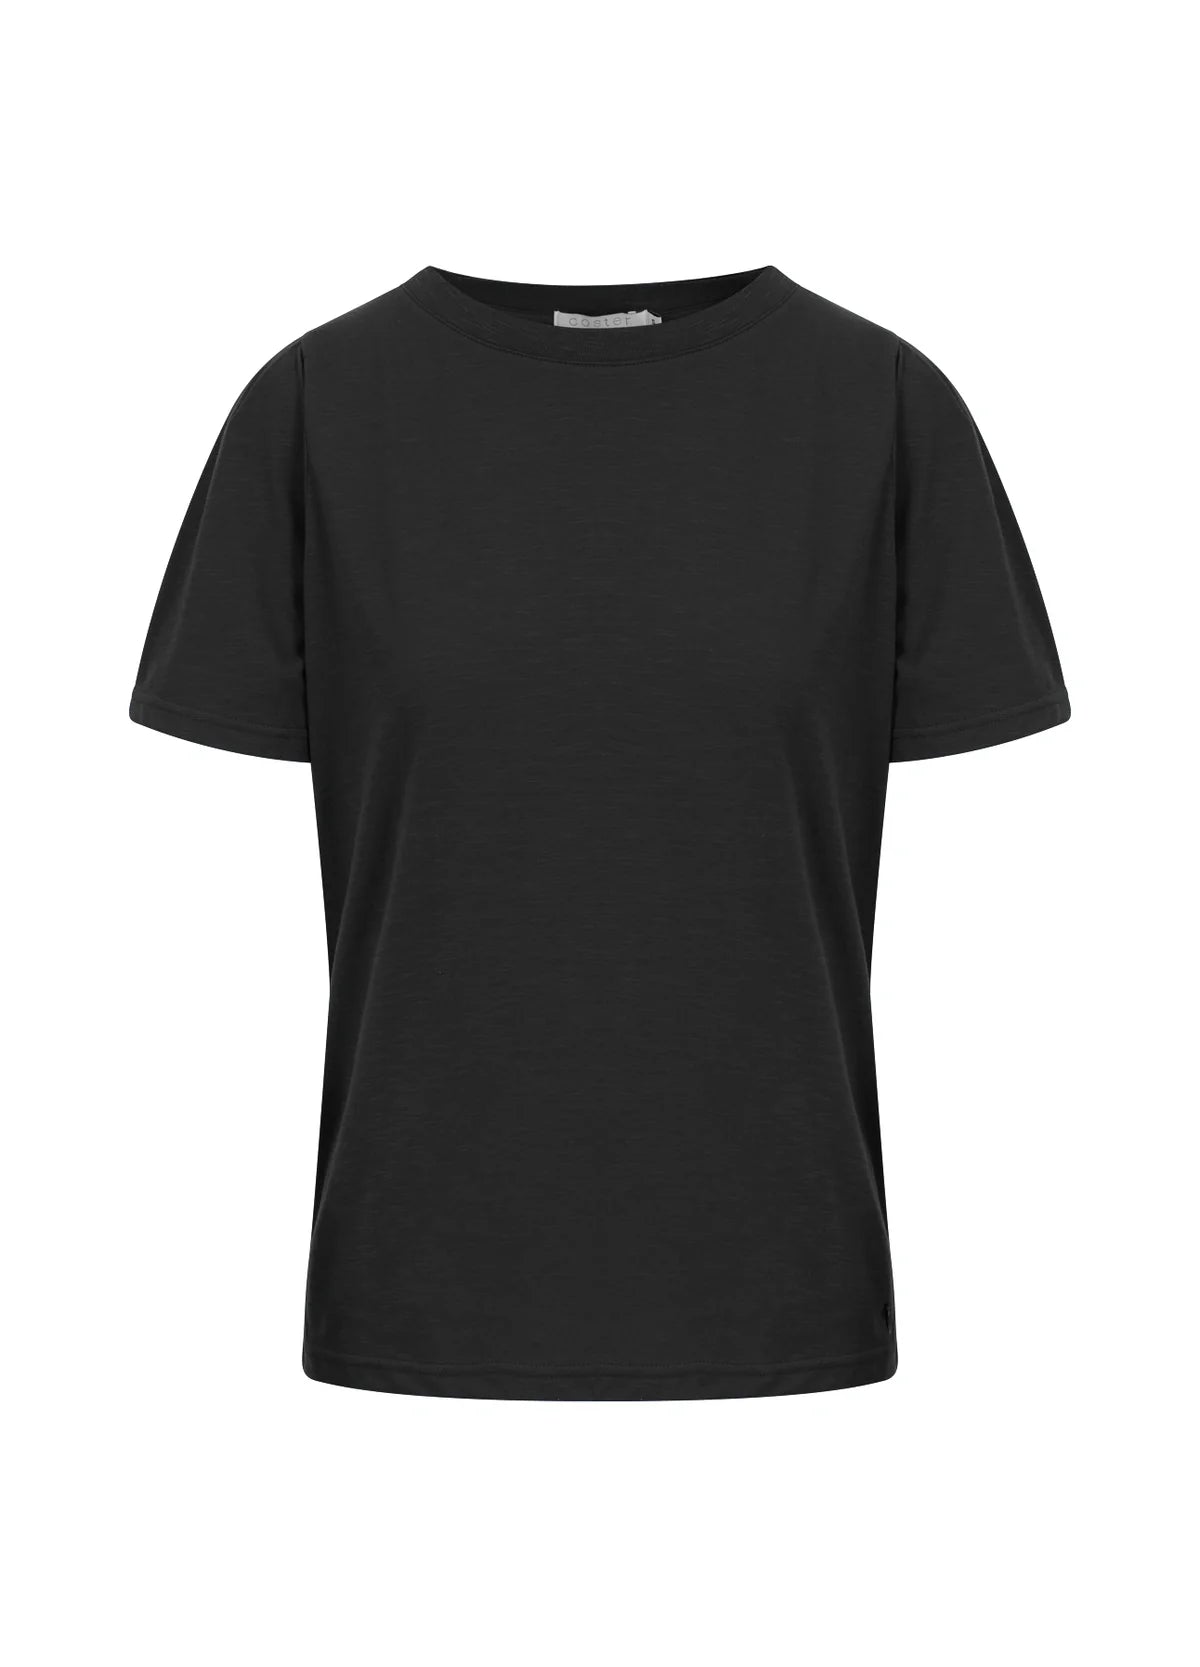 Coster Copenhagen - T-shirt - Noir